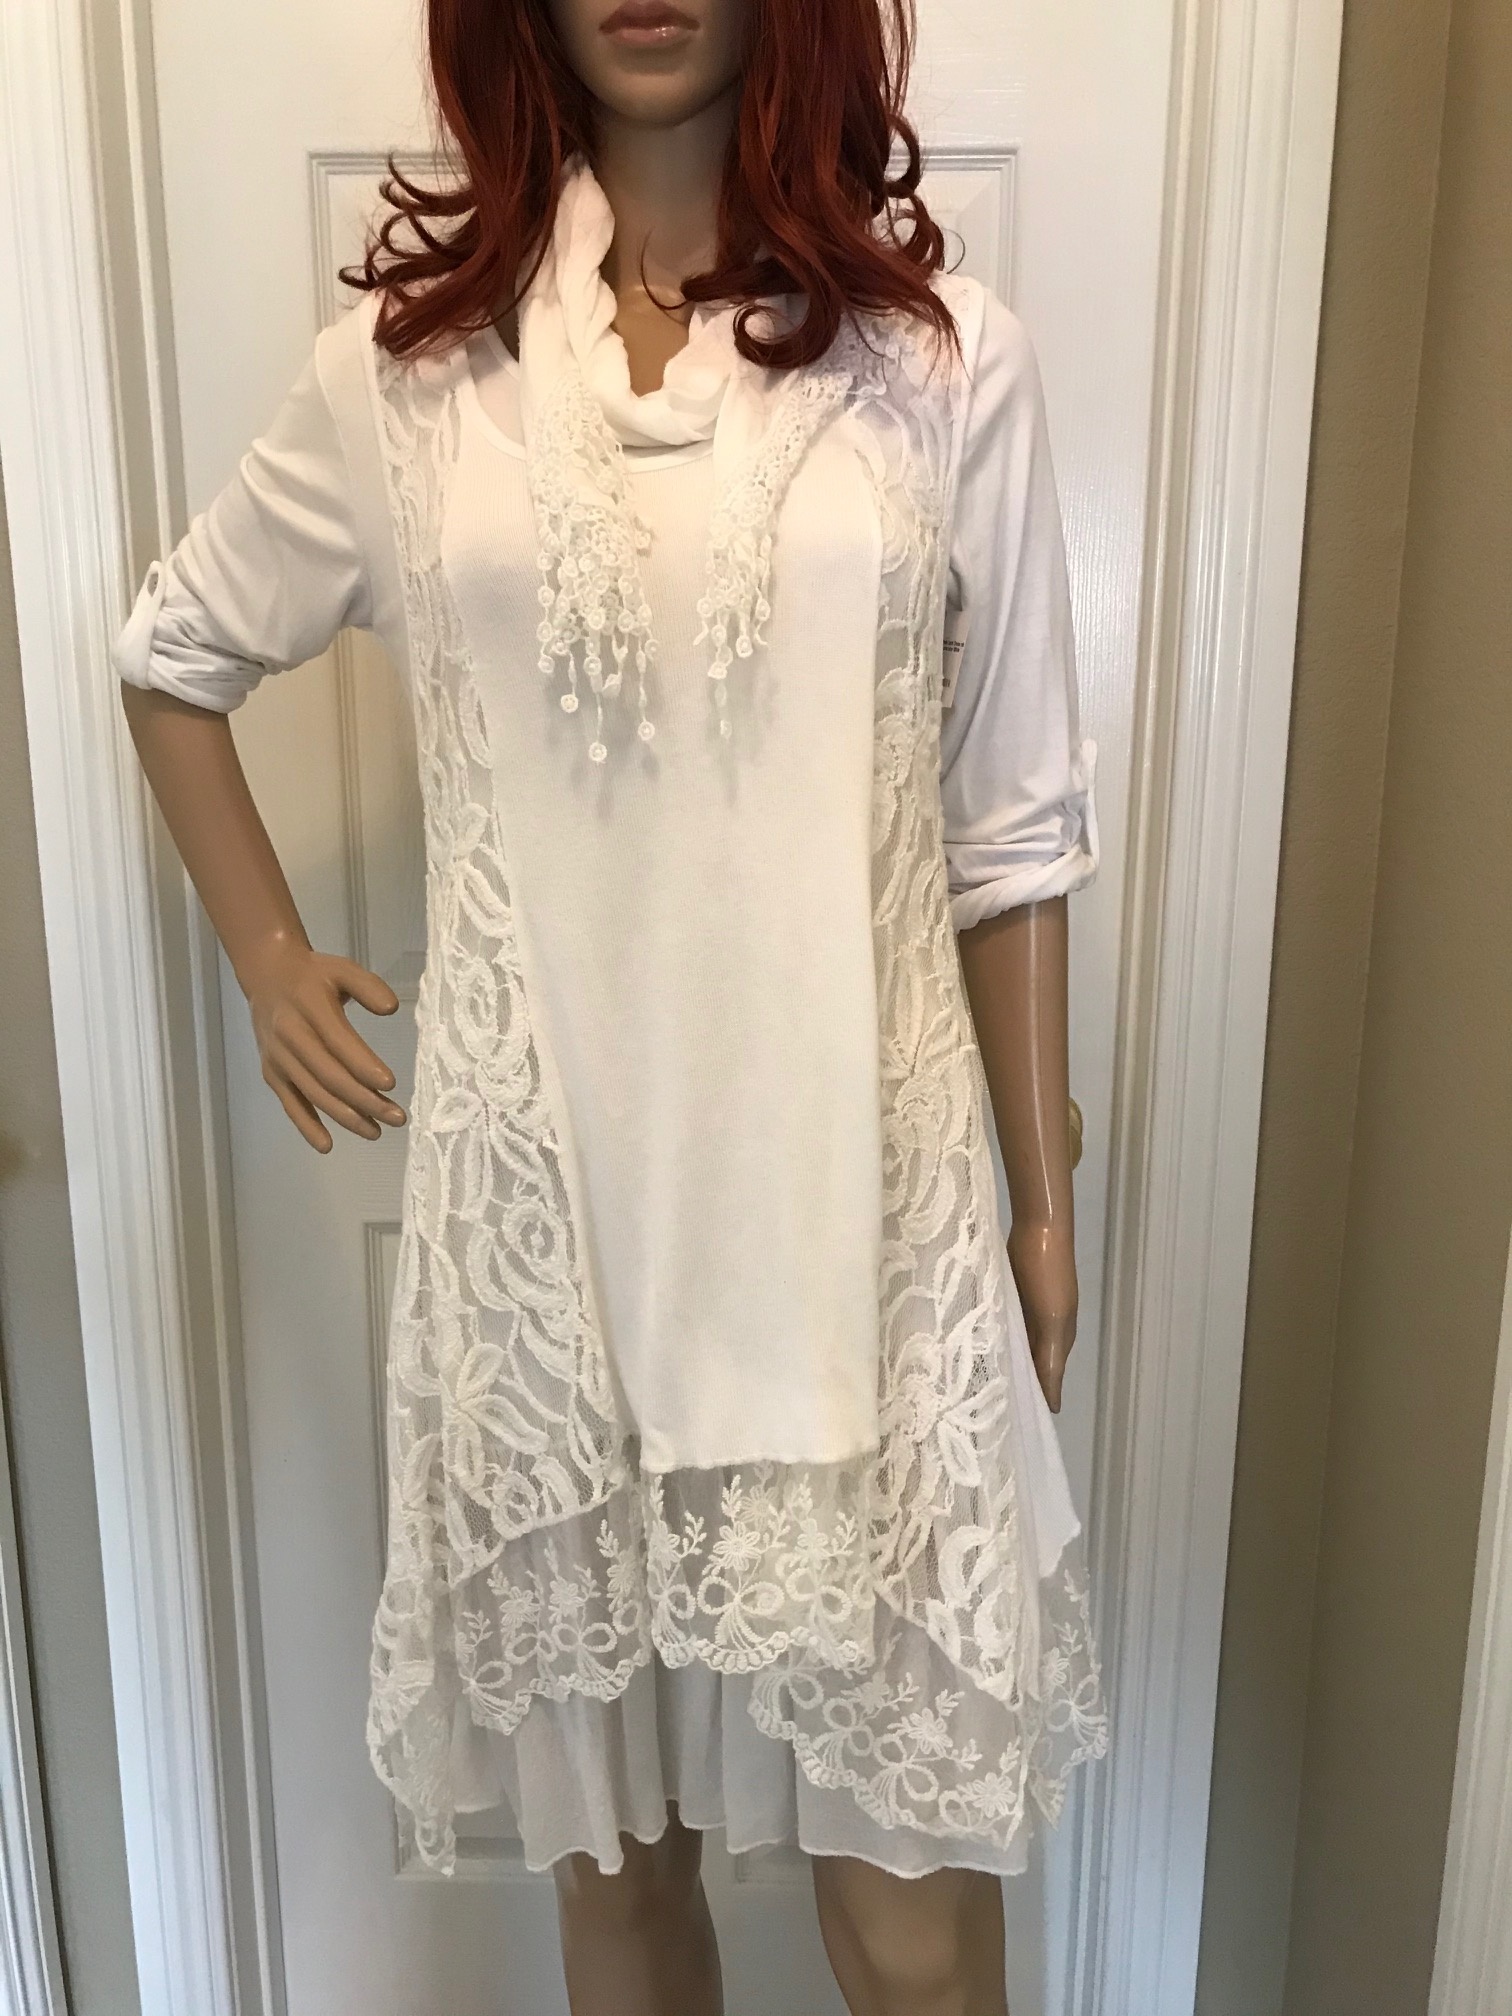 white lace dress boutique